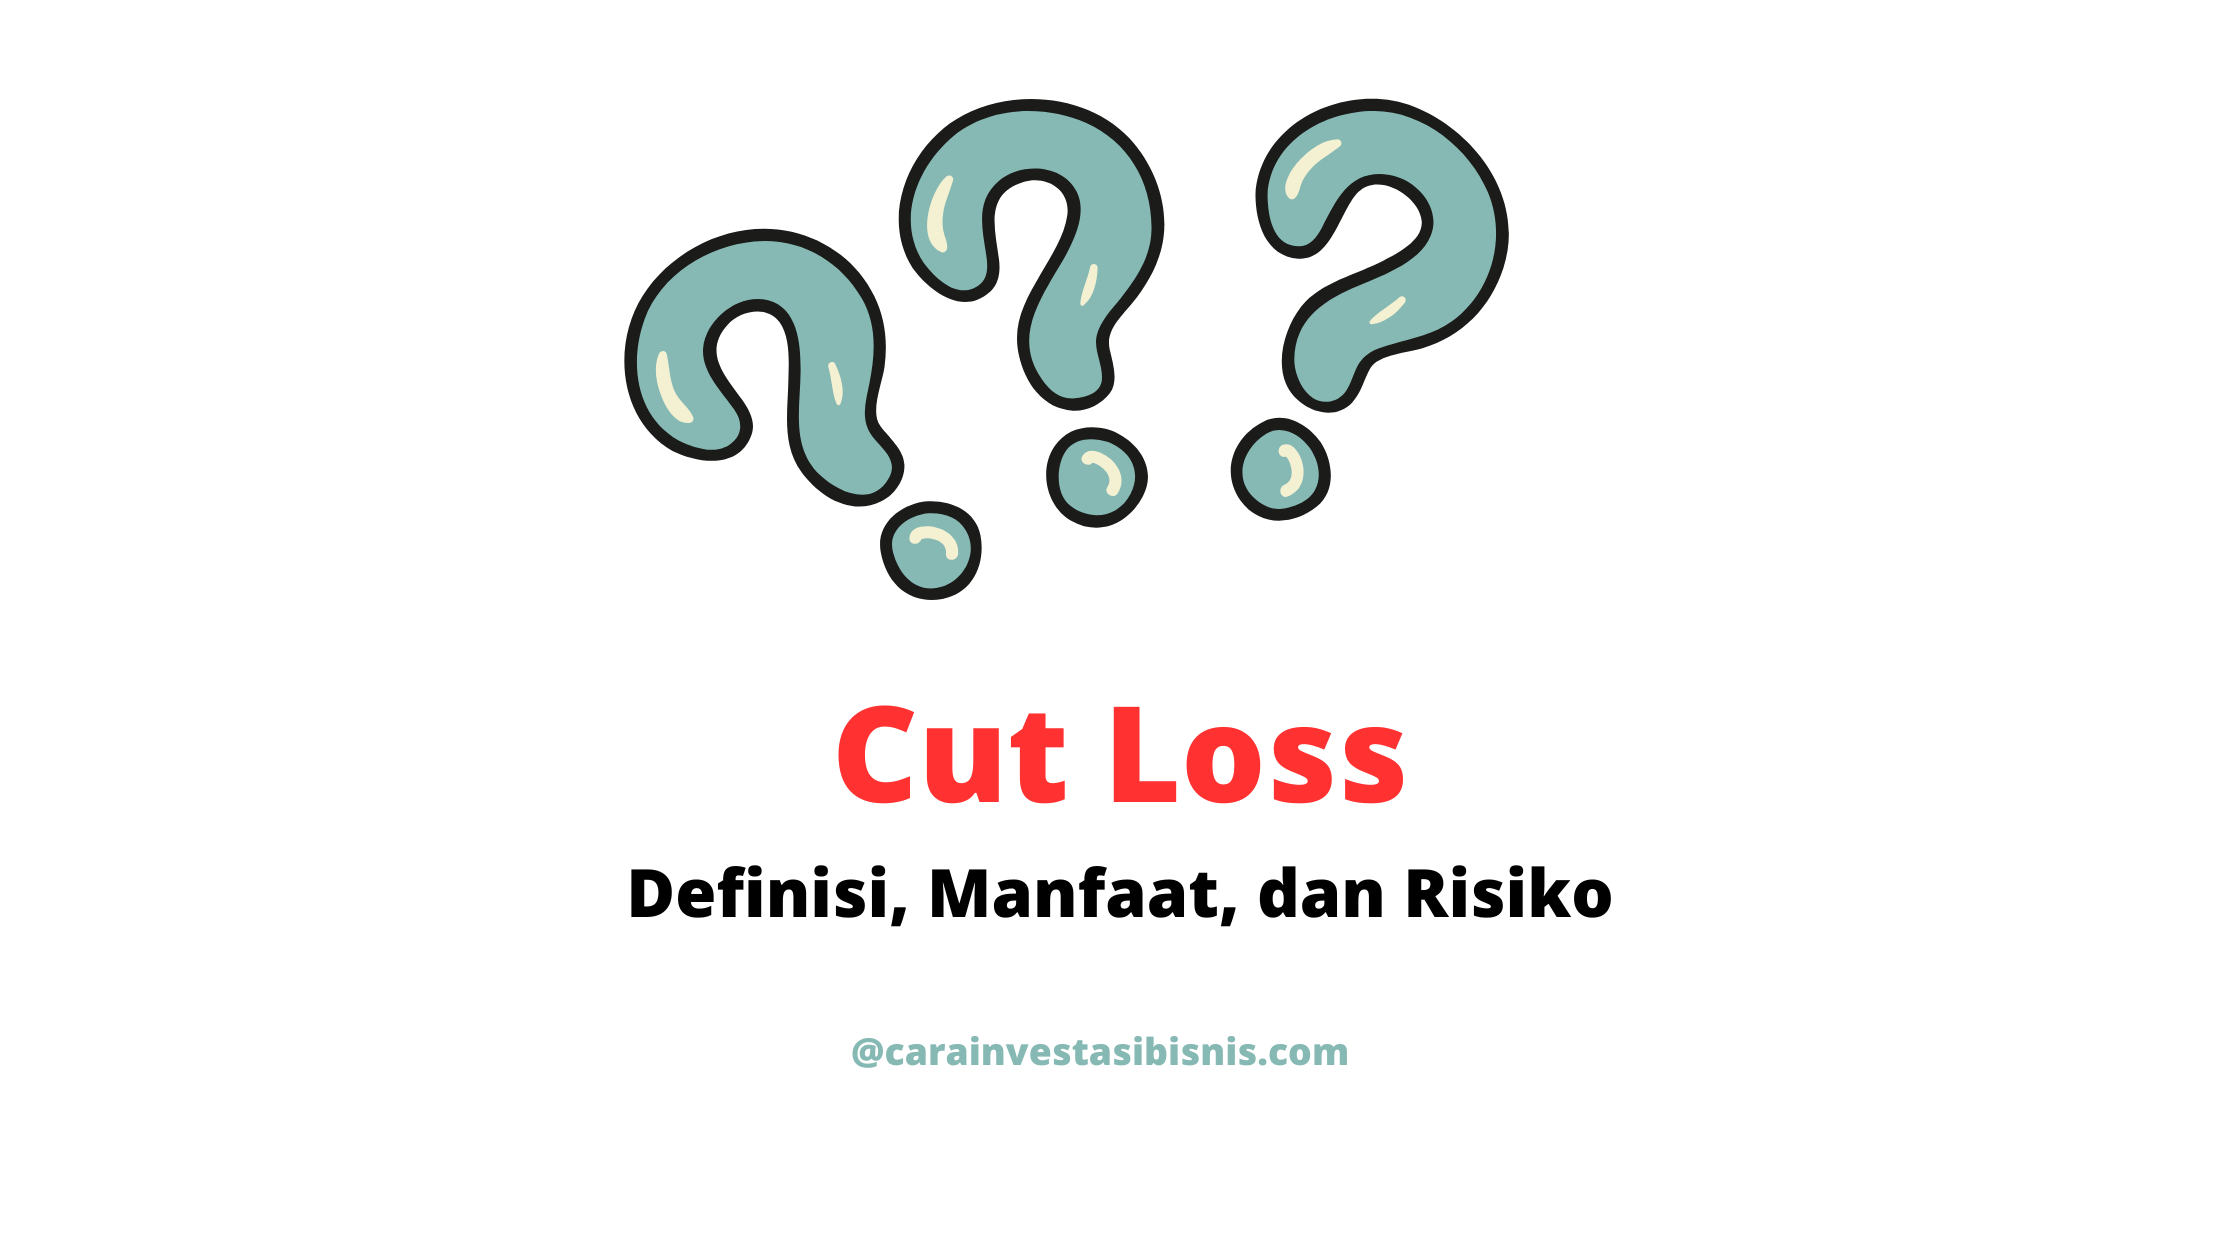 cut loss adalah